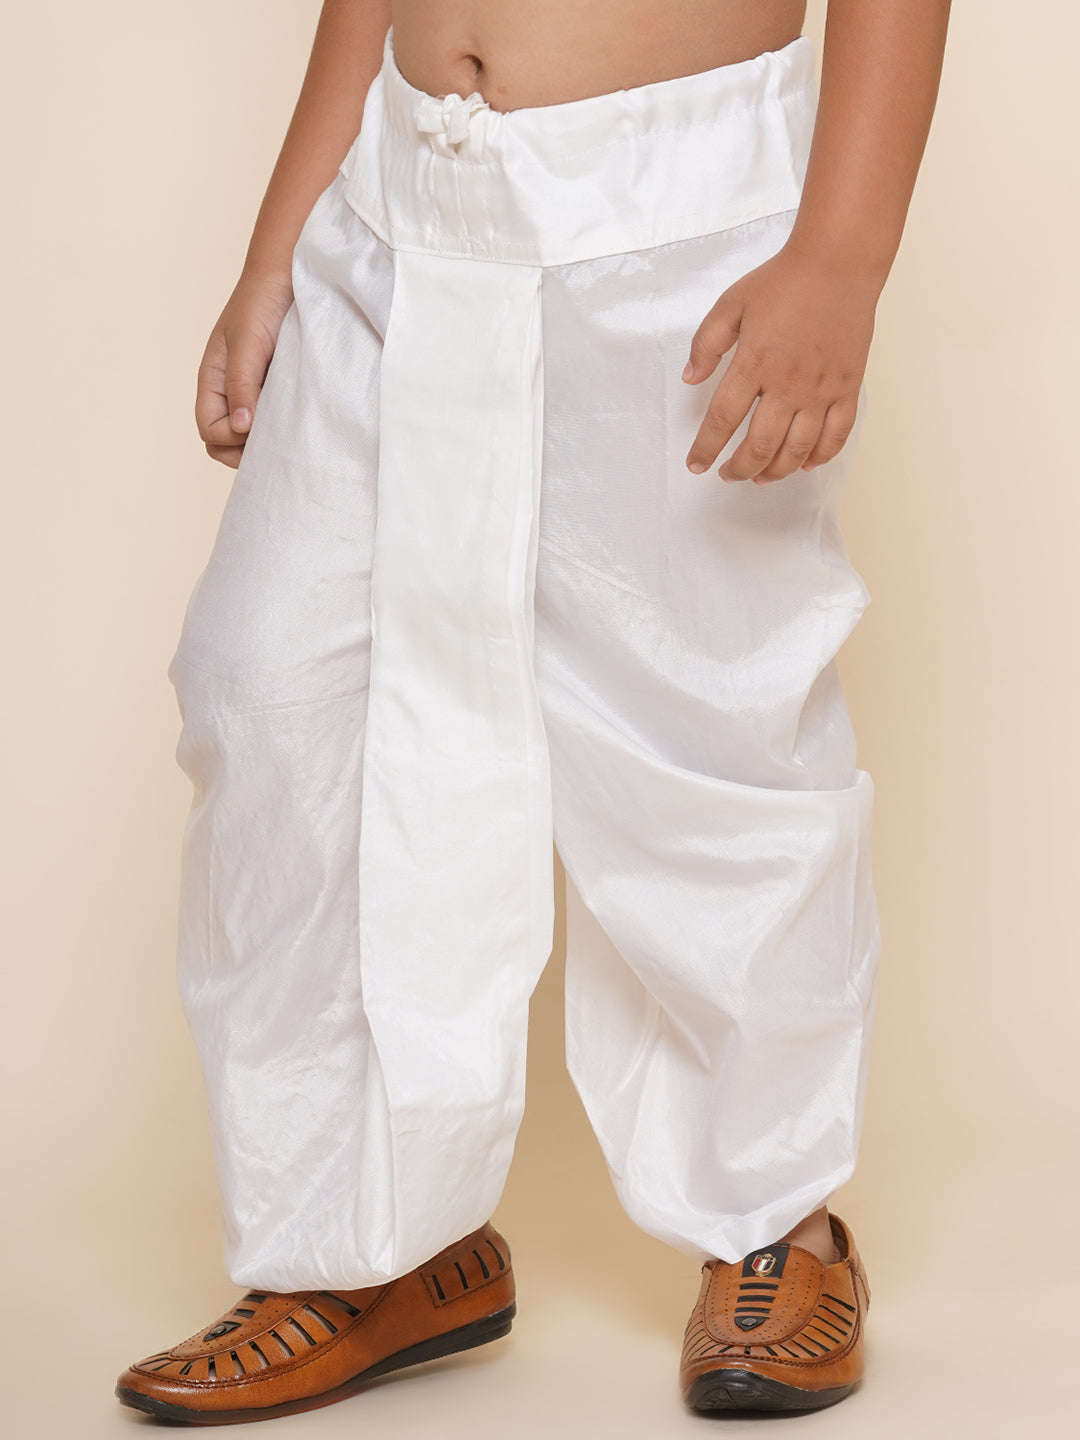 Silk Pajamas for Women | Indian Silk Pajamas | Women's Pajama | SAINLY